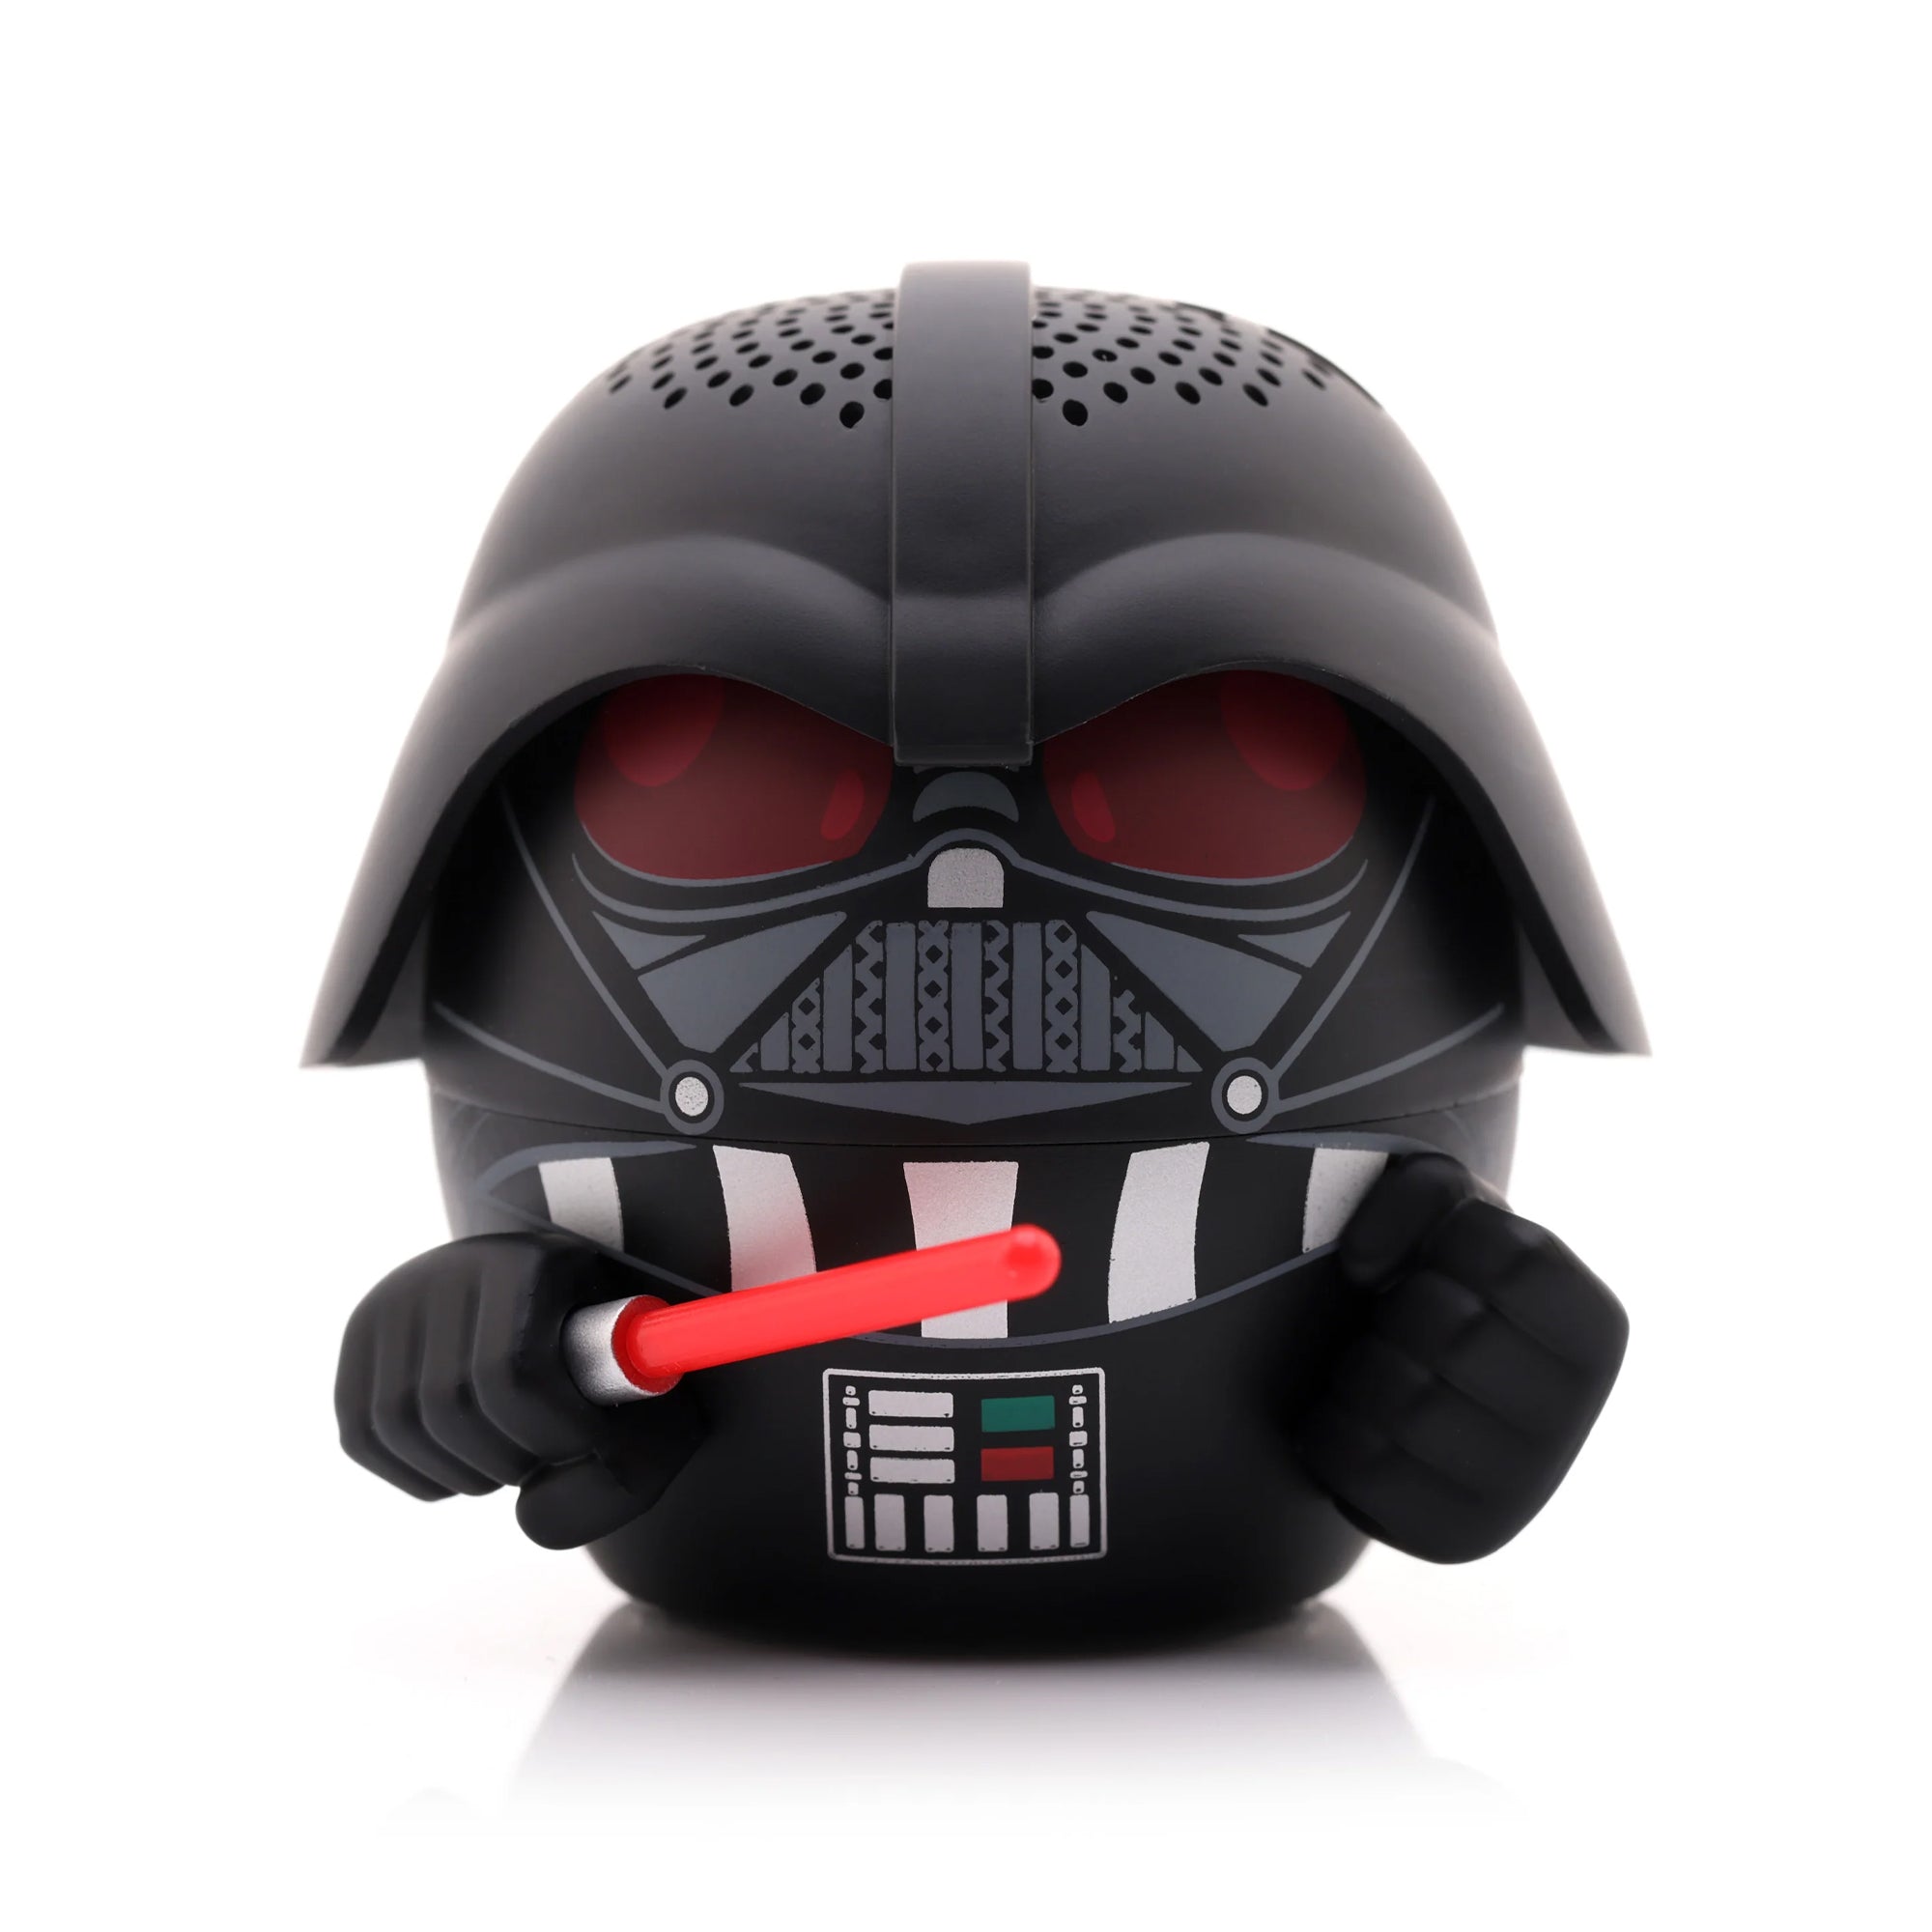 Star Wars Darth Vader Wireless Bluetooth Speaker